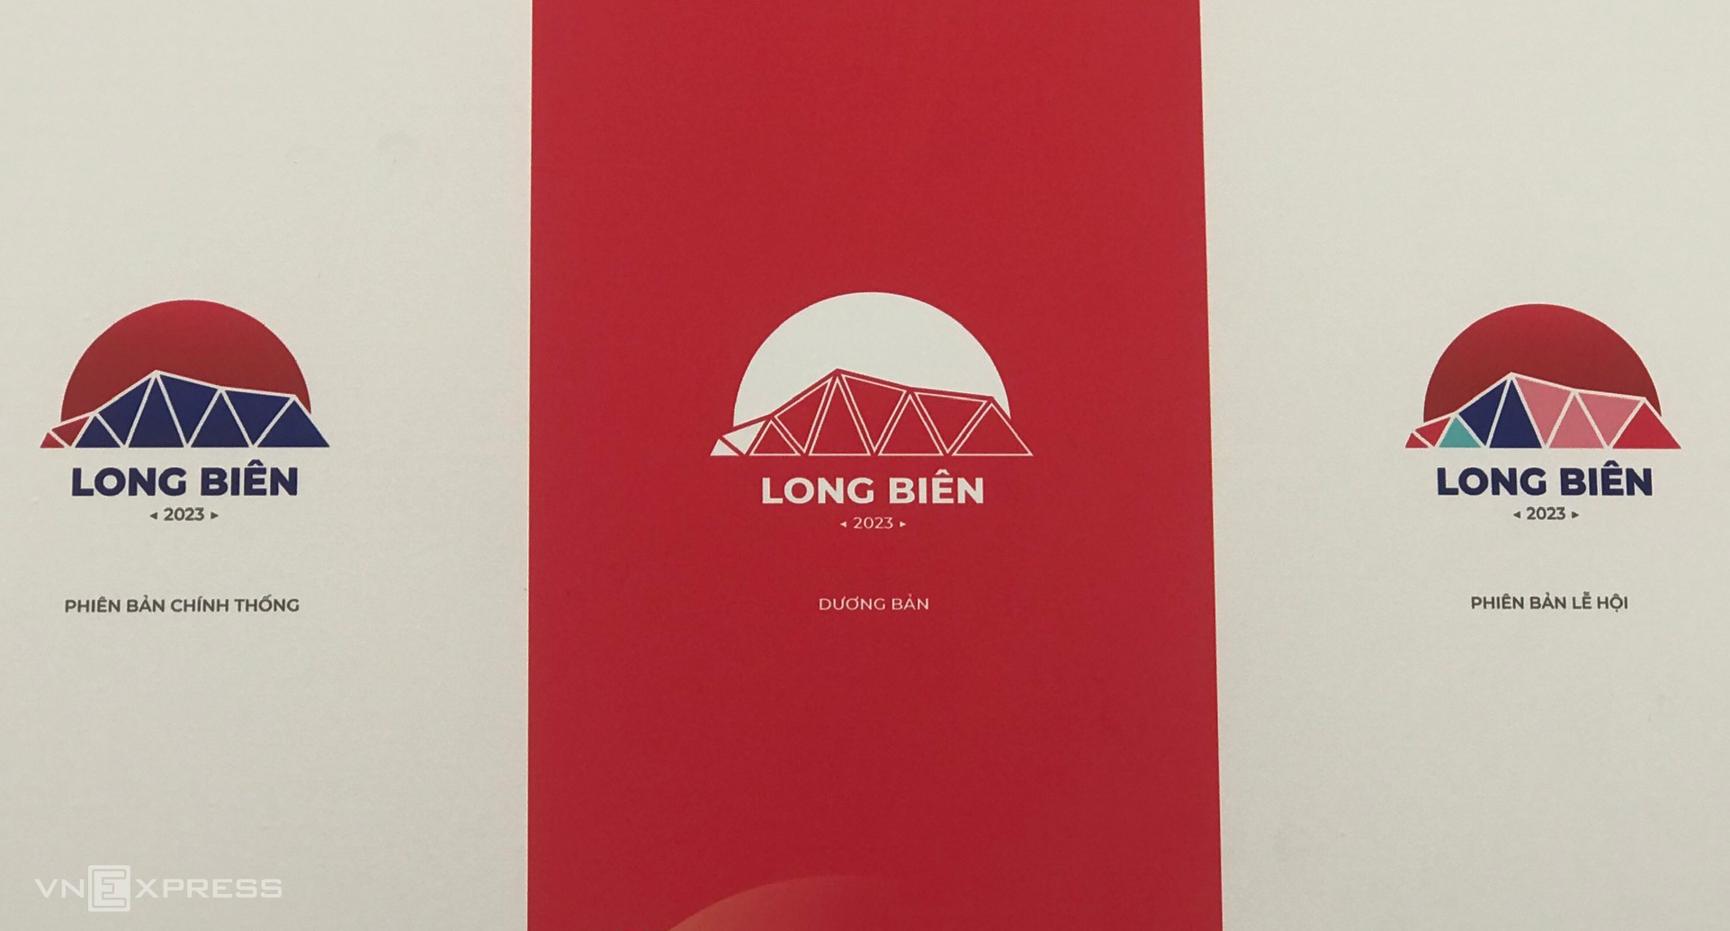 Hình ảnh cầu Long Biên giành giải nhất sáng tác logo quận